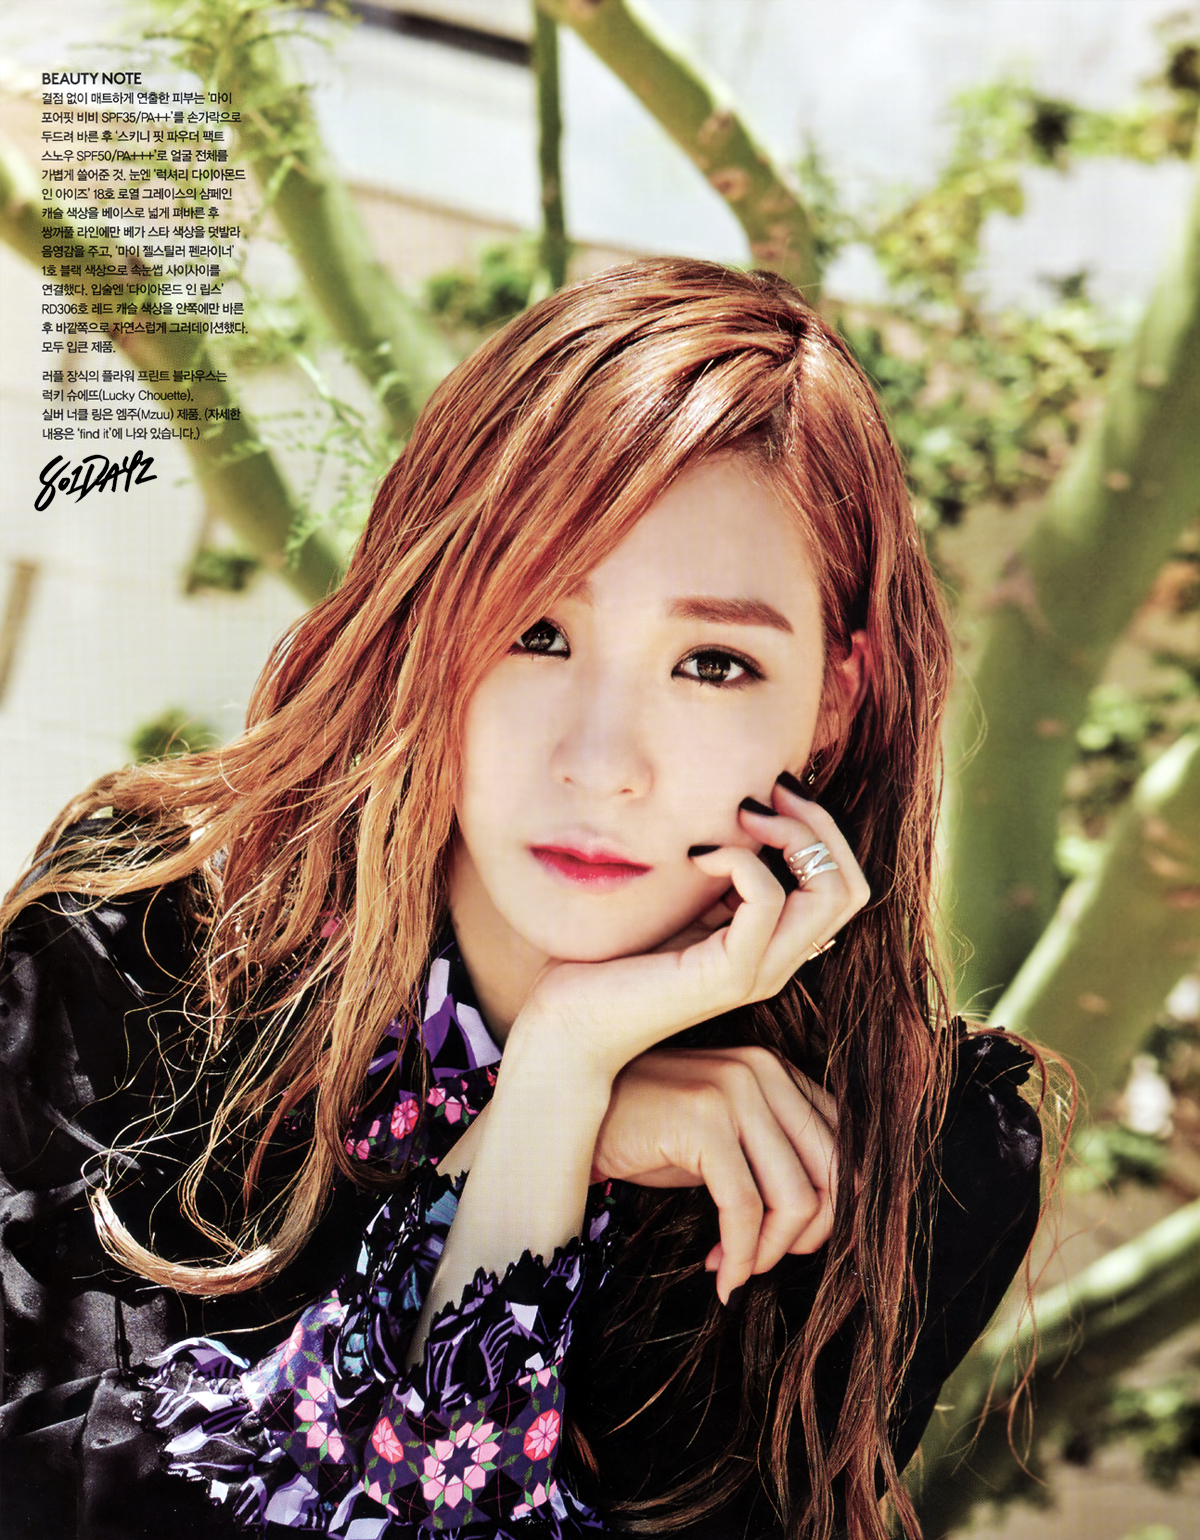 [PIC][20-09-2014]Tiffany xuất hiện trên ấn phẩm tháng 10 của tạp chí "VOGUE GIRL"  2268F738541D0AEC205C0C